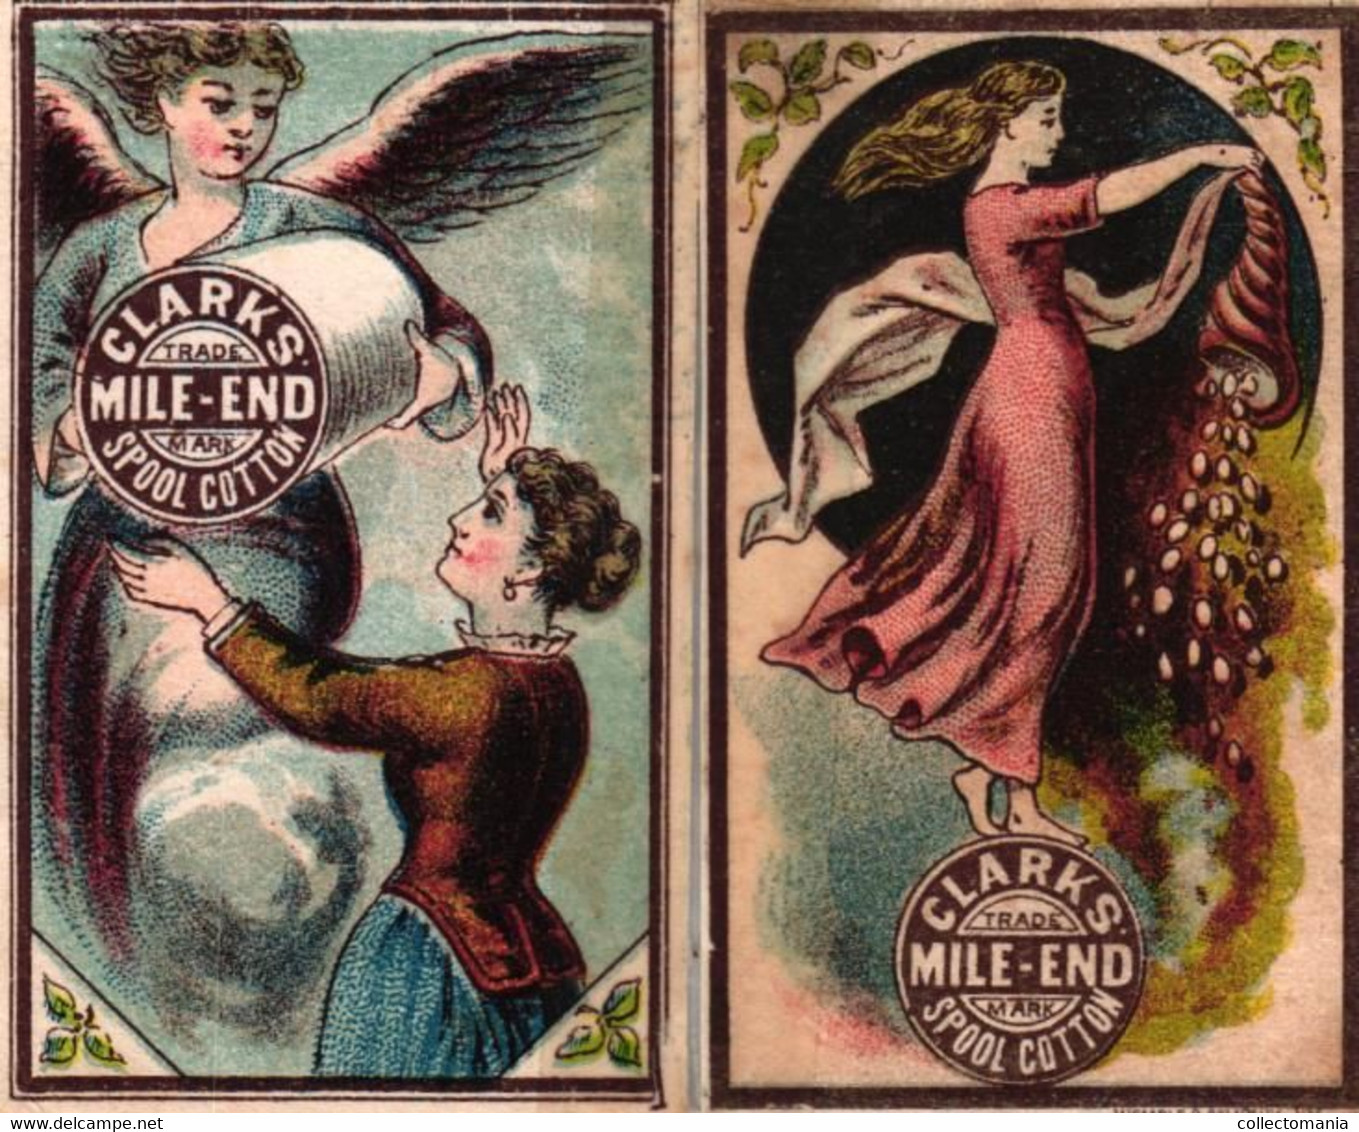 1 Calendrier 1881  Clark's Mile-End Spool Cotton  Angel - Petit Format : ...-1900